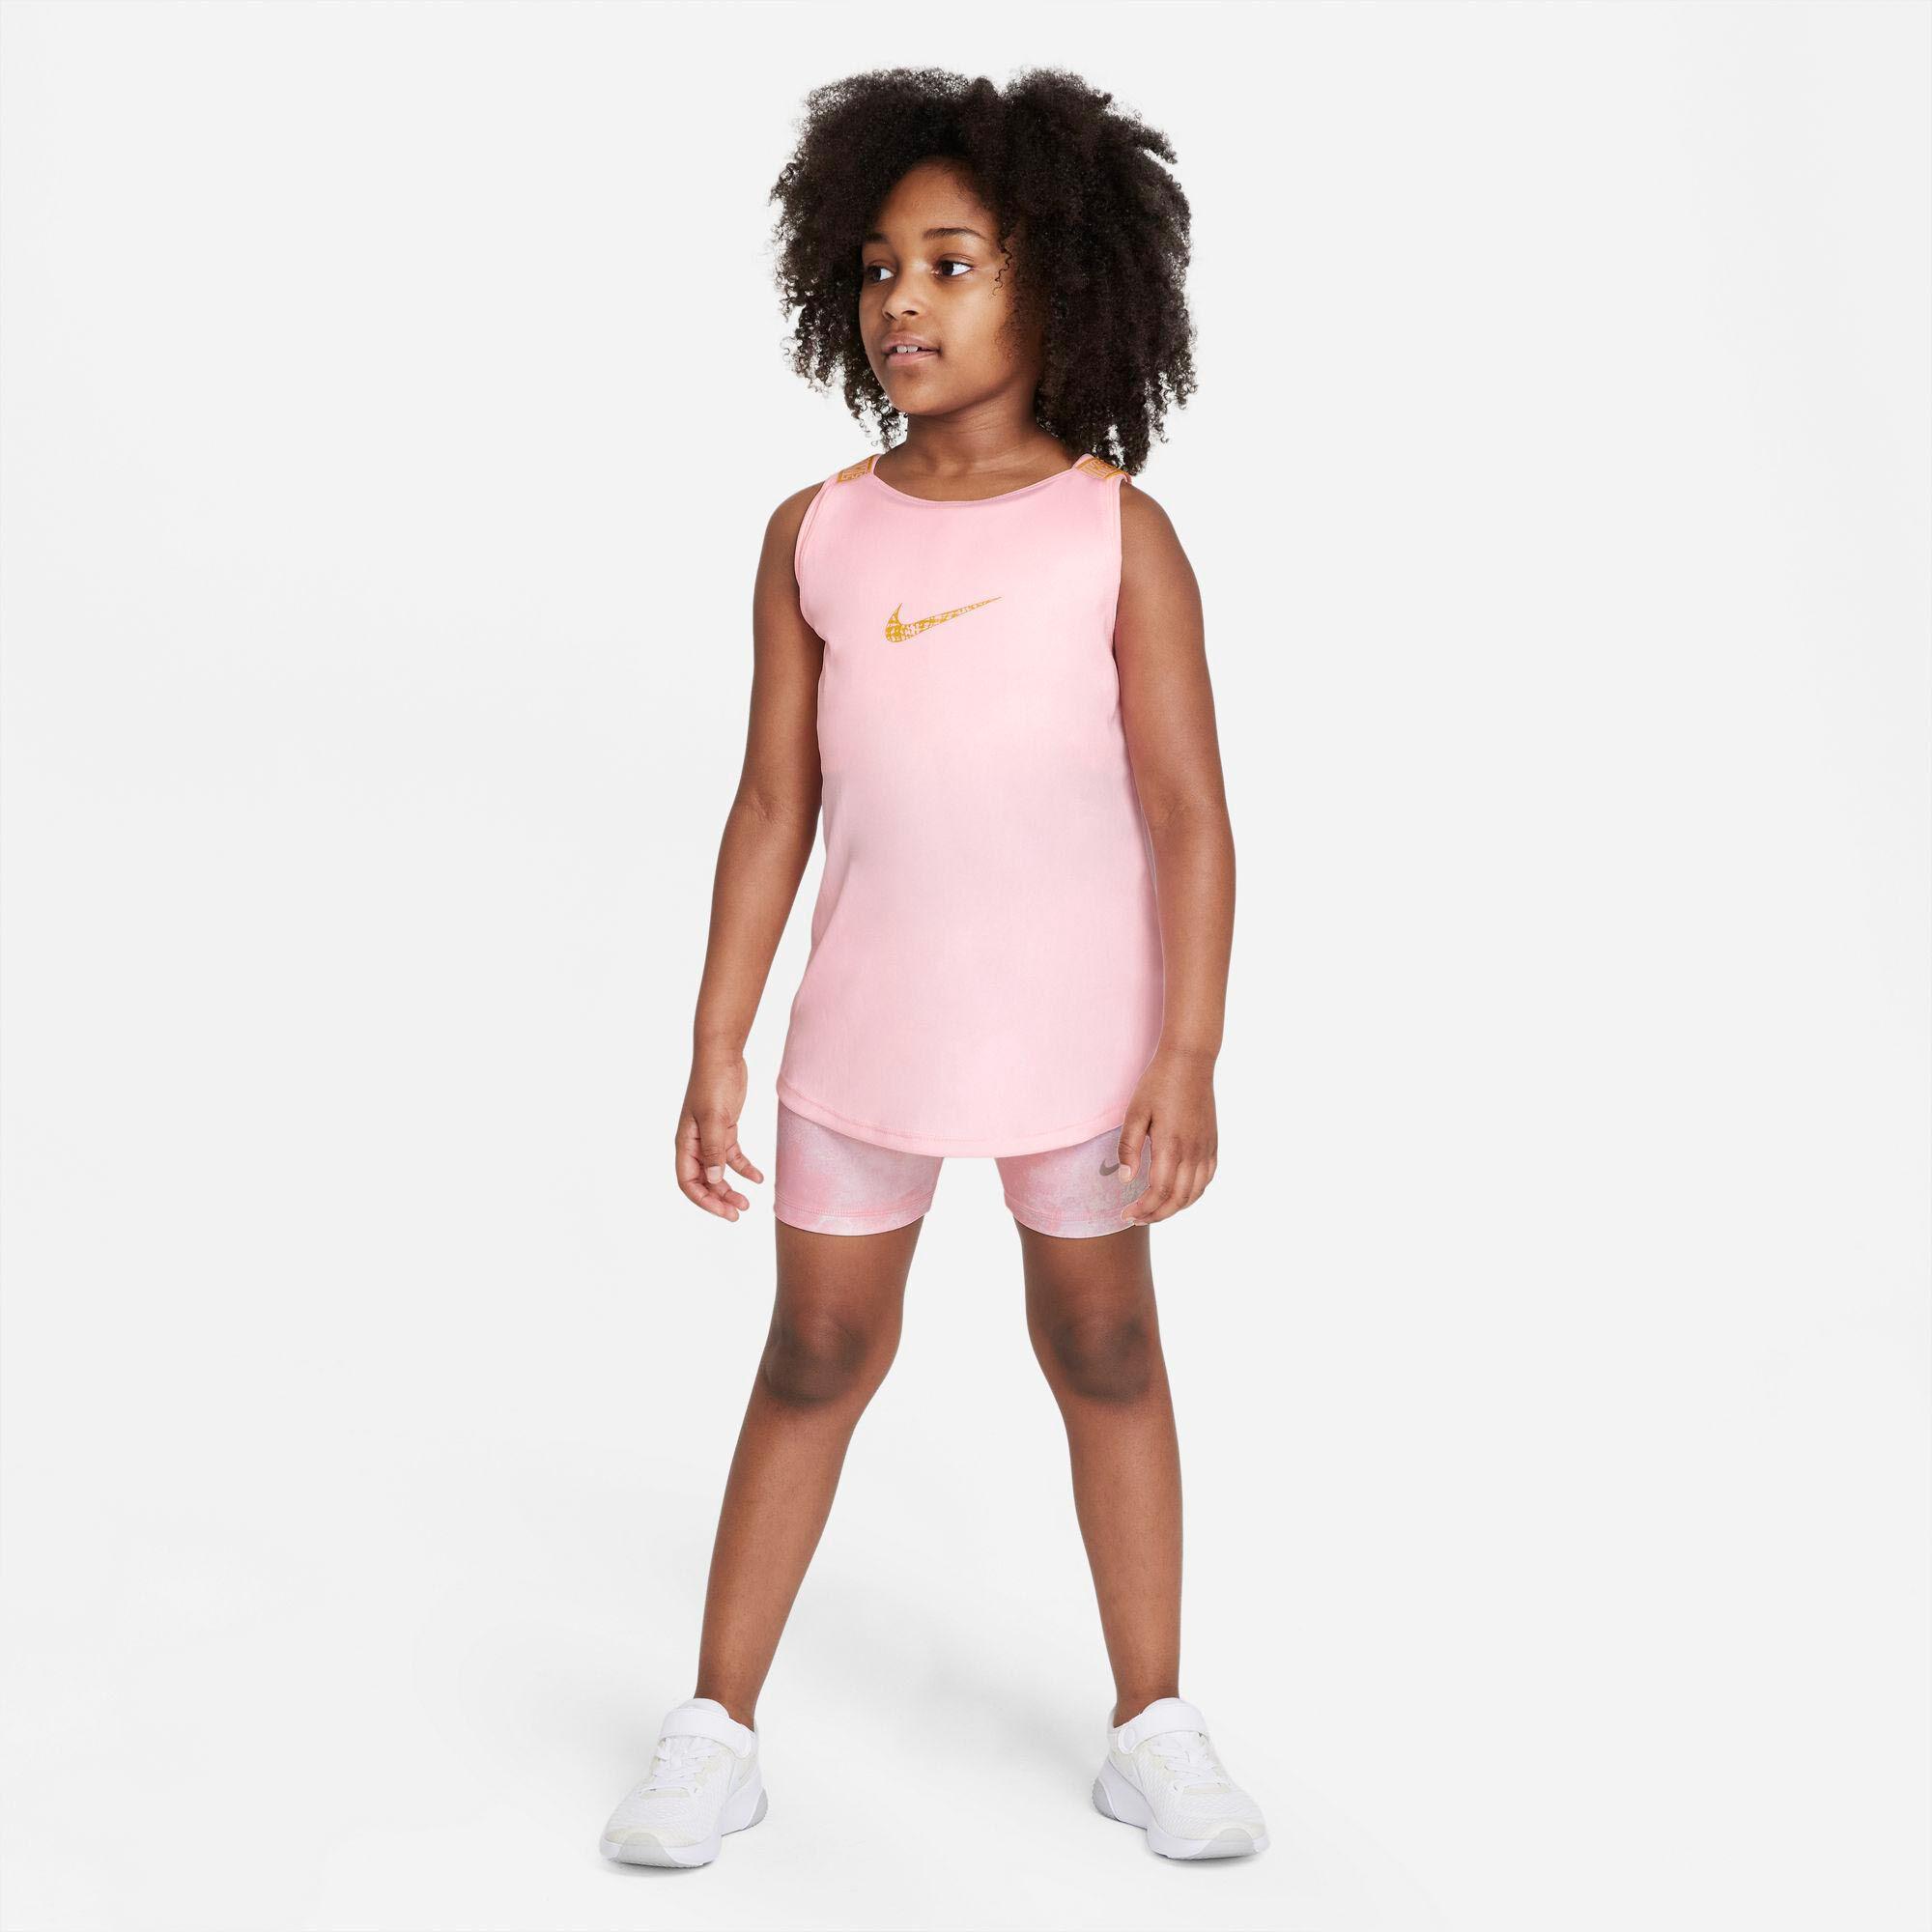 Buy Nike Dri-Fit Elastika Tank Top Girls Pink online | Tennis Point UK